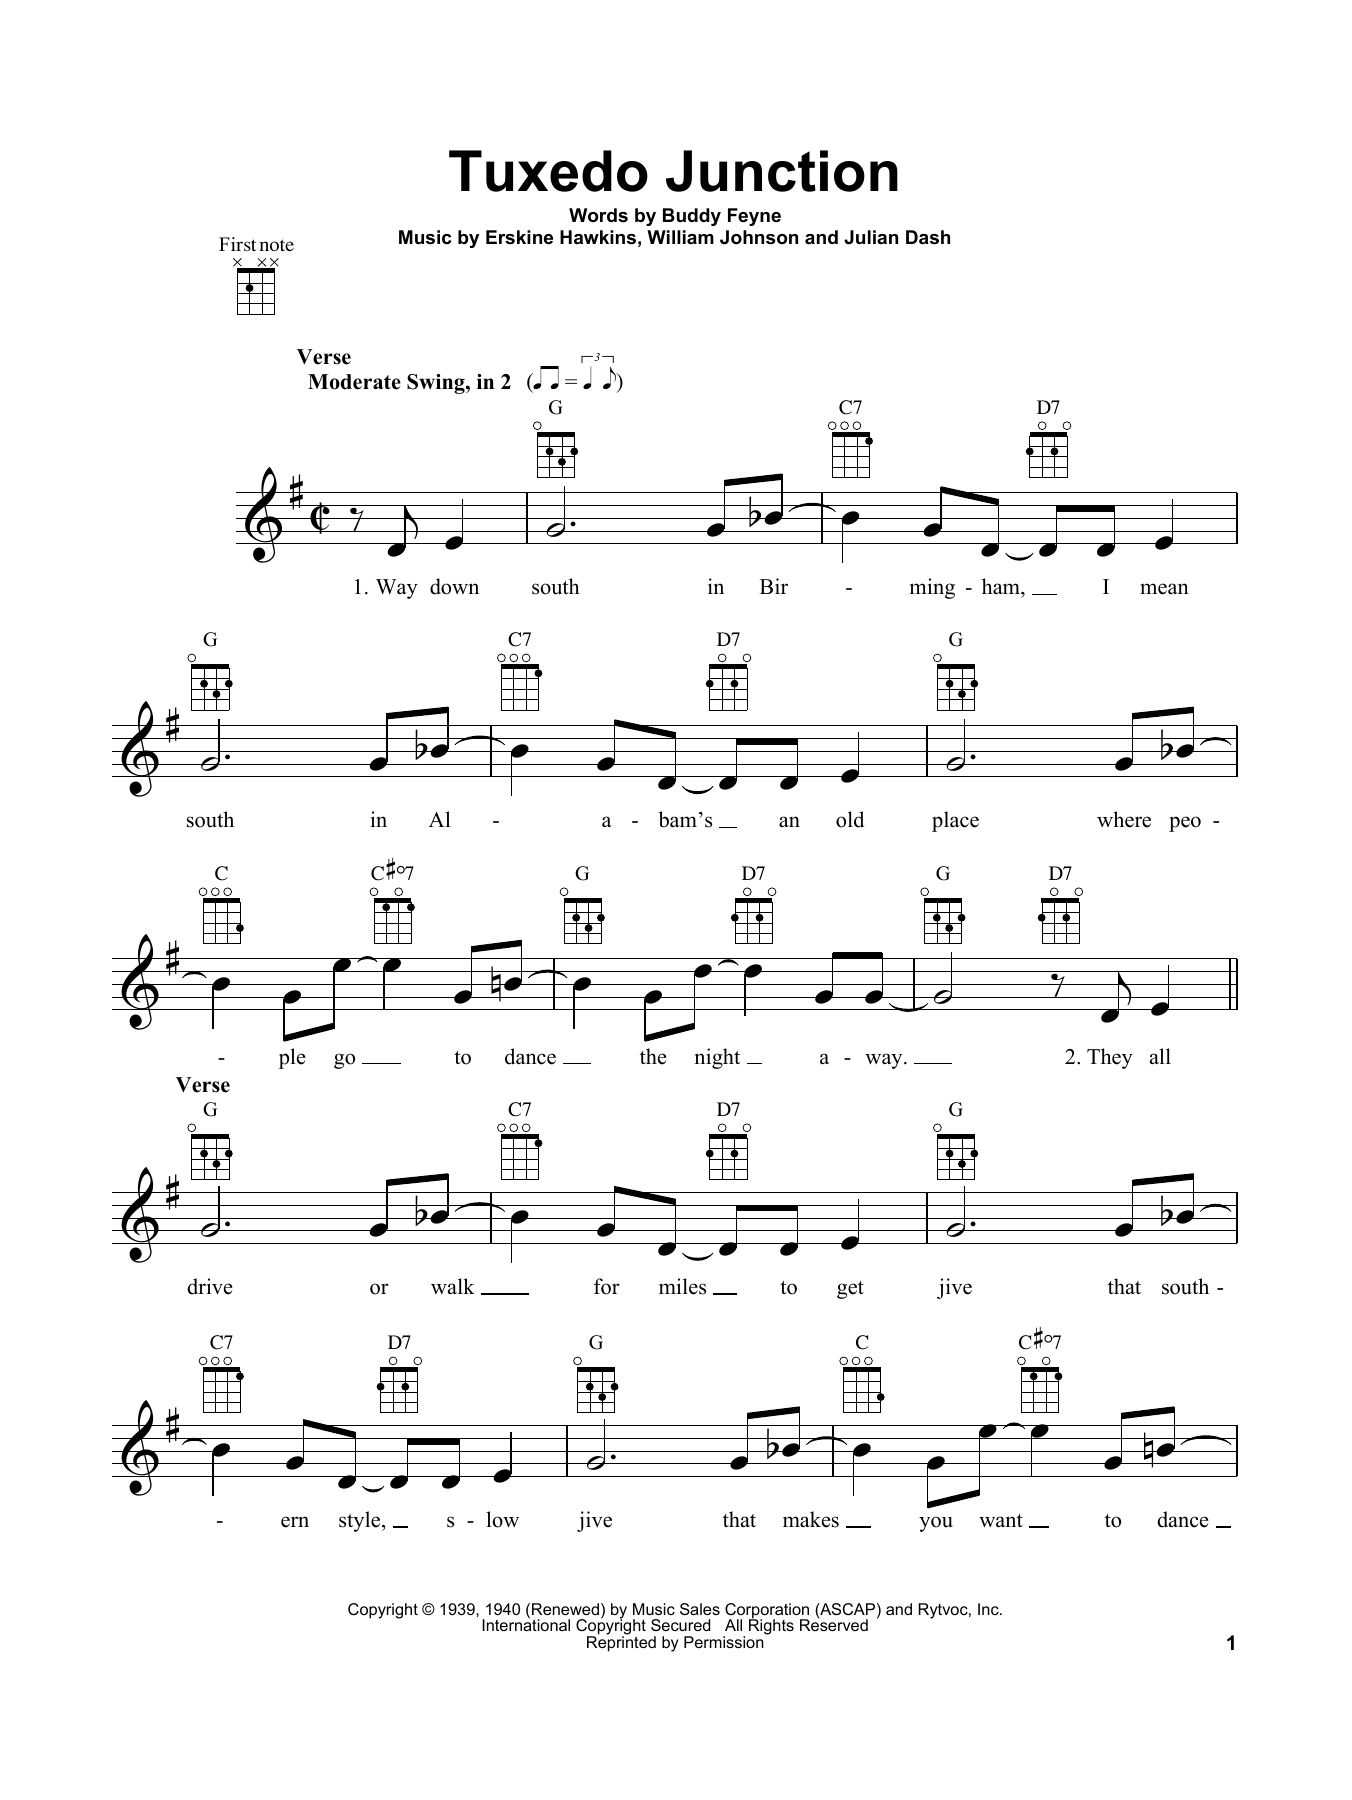 Erskine Hawkins Tuxedo Junction Sheet Music Notes & Chords for Ukulele - Download or Print PDF